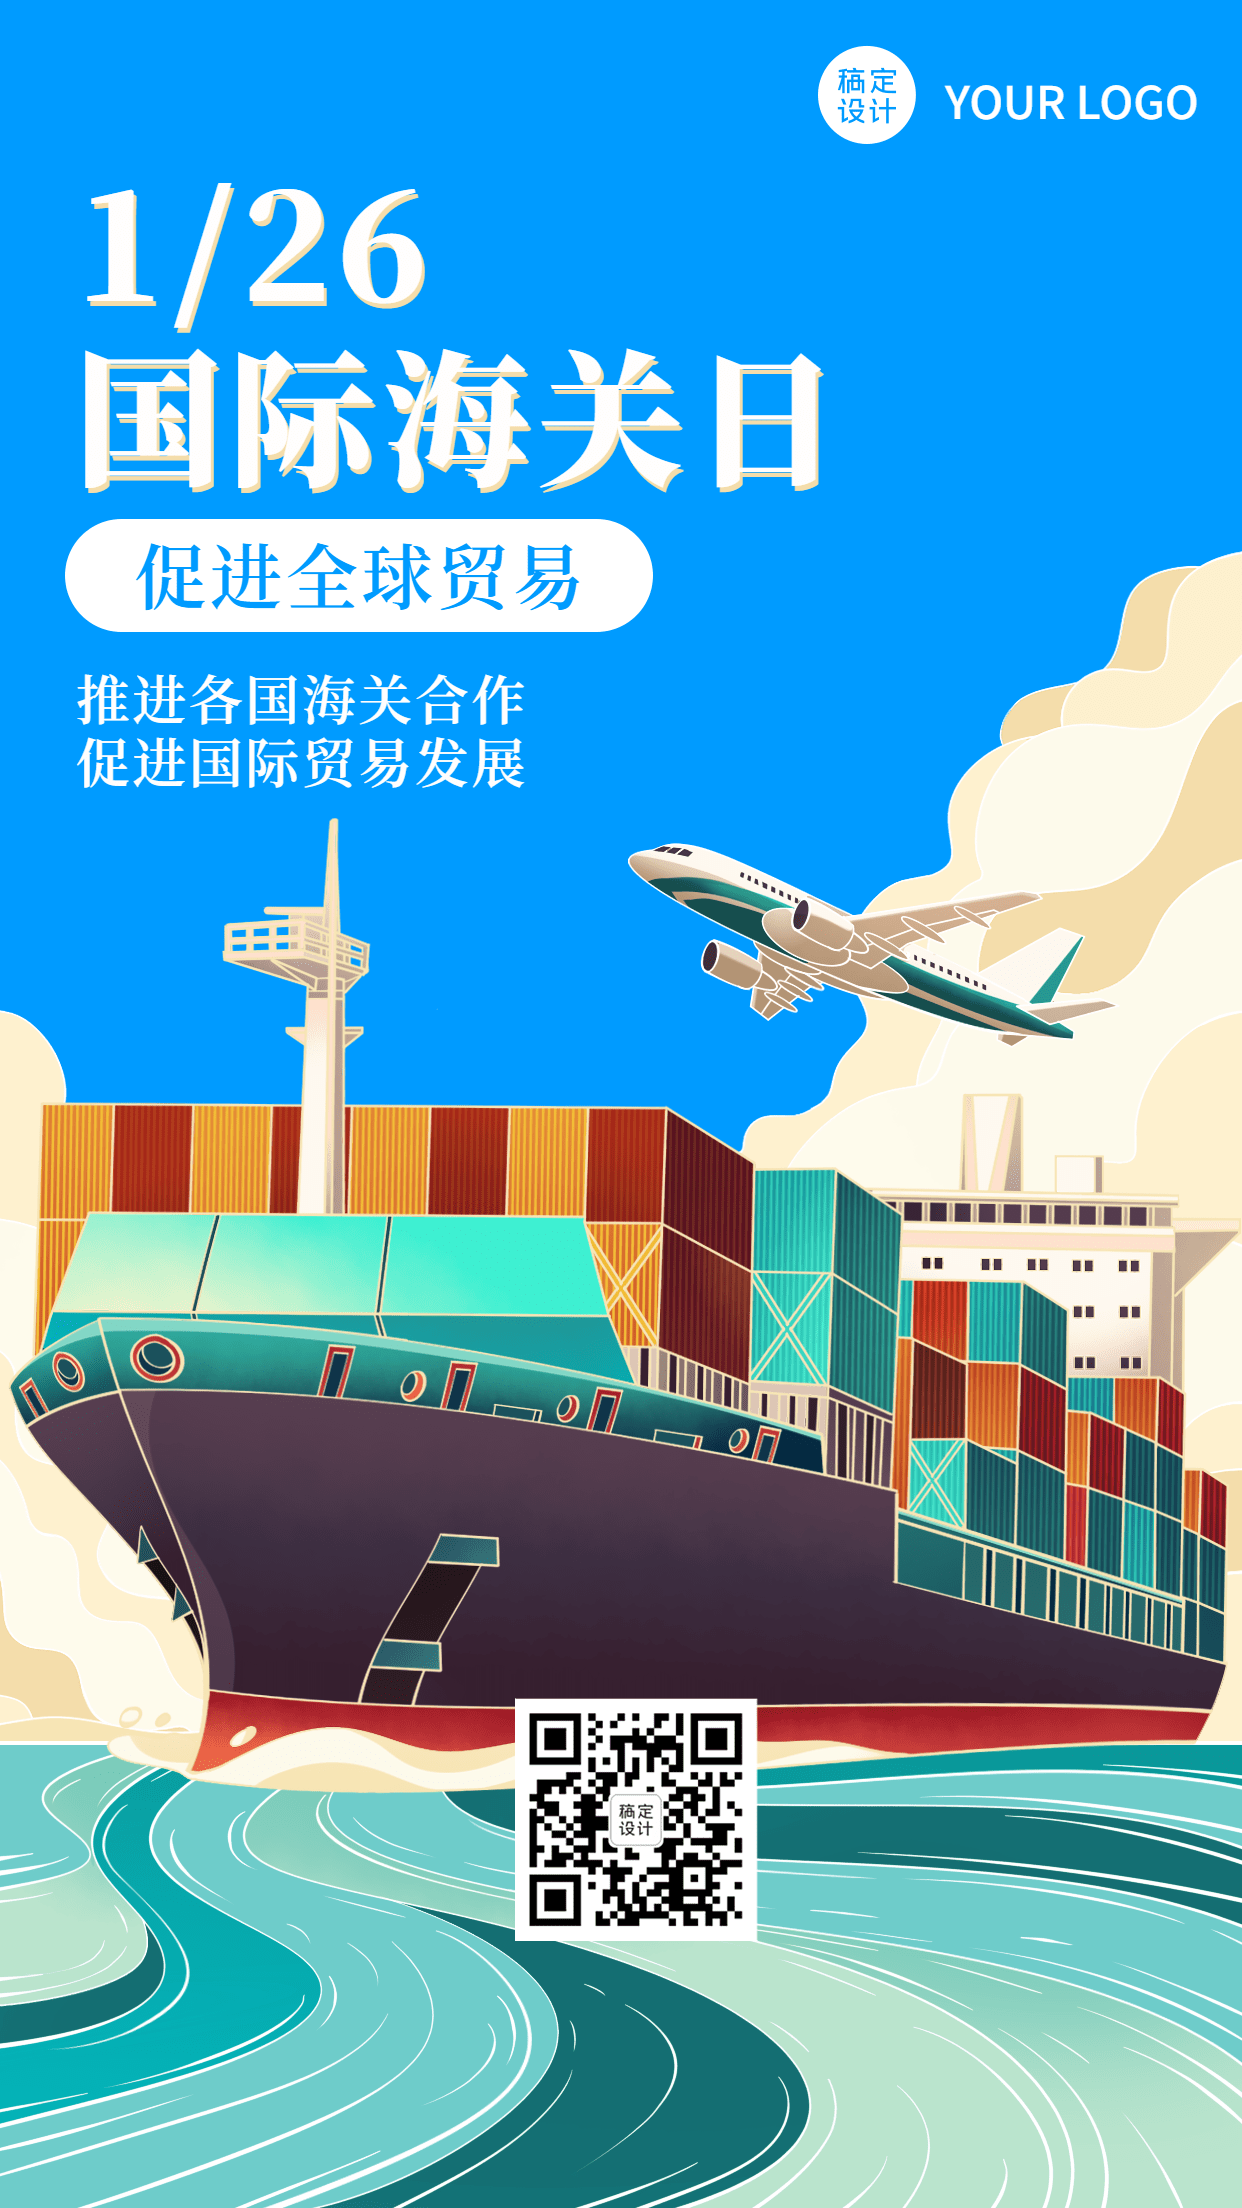 国际海关日物流贸易手机海报预览效果